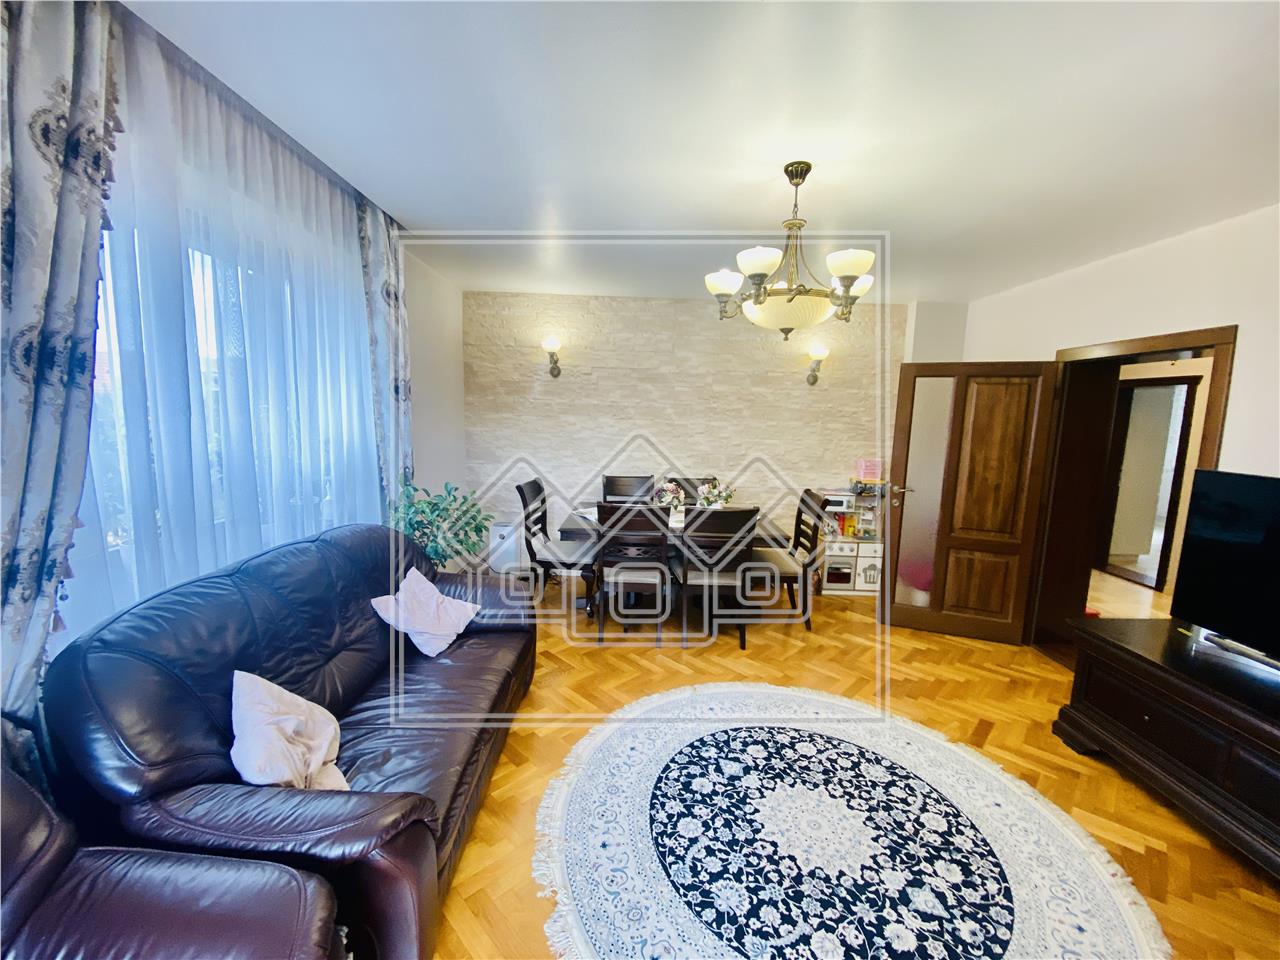 Apartament de vanzare in Sibiu - la vila - 100 mp utili - Strand